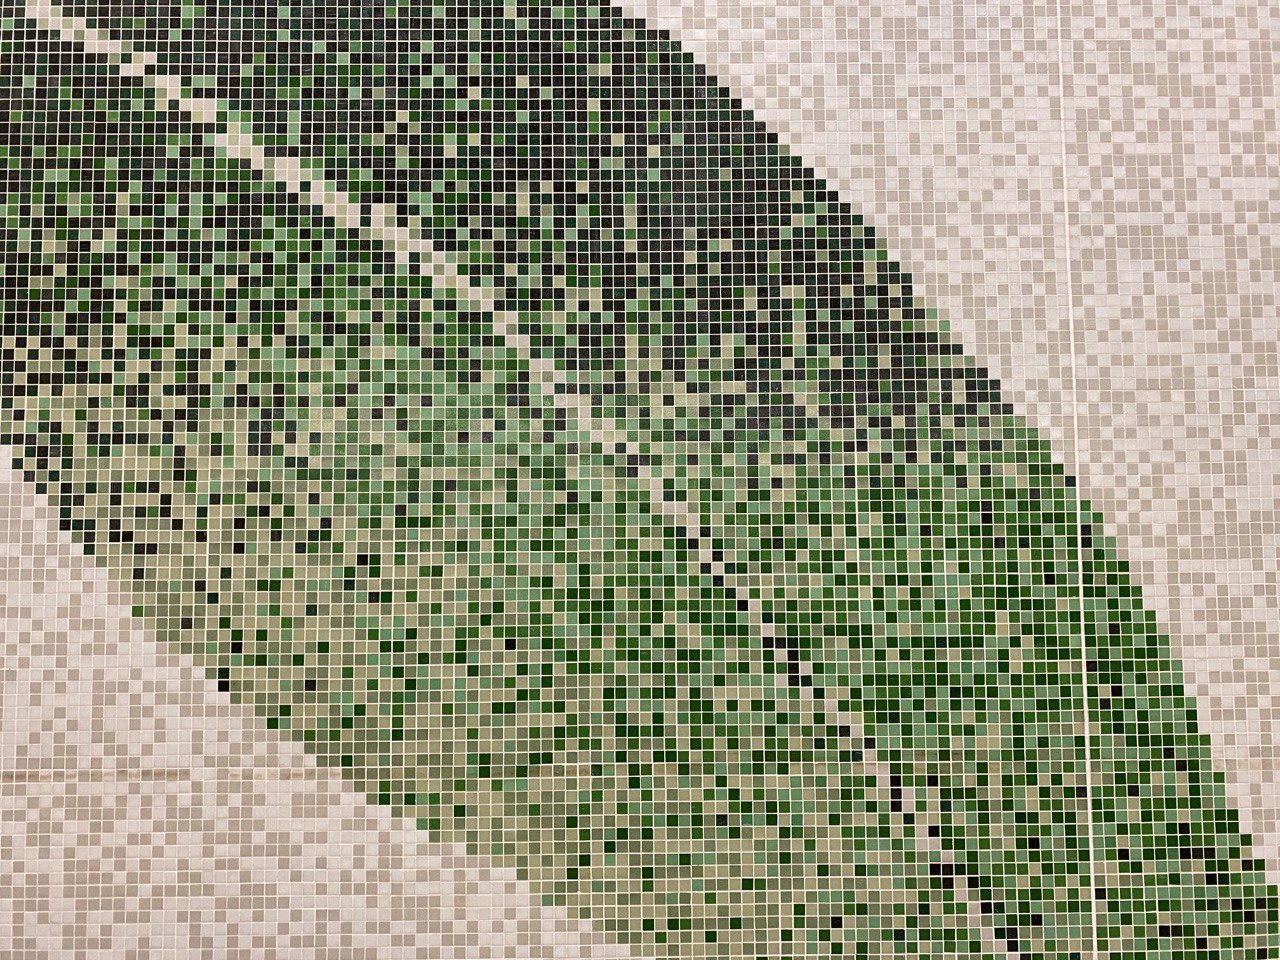 一张装饰用图片，展示了使用马赛克风格瓷砖拼装的树叶图案，经过染色滤镜效果处理